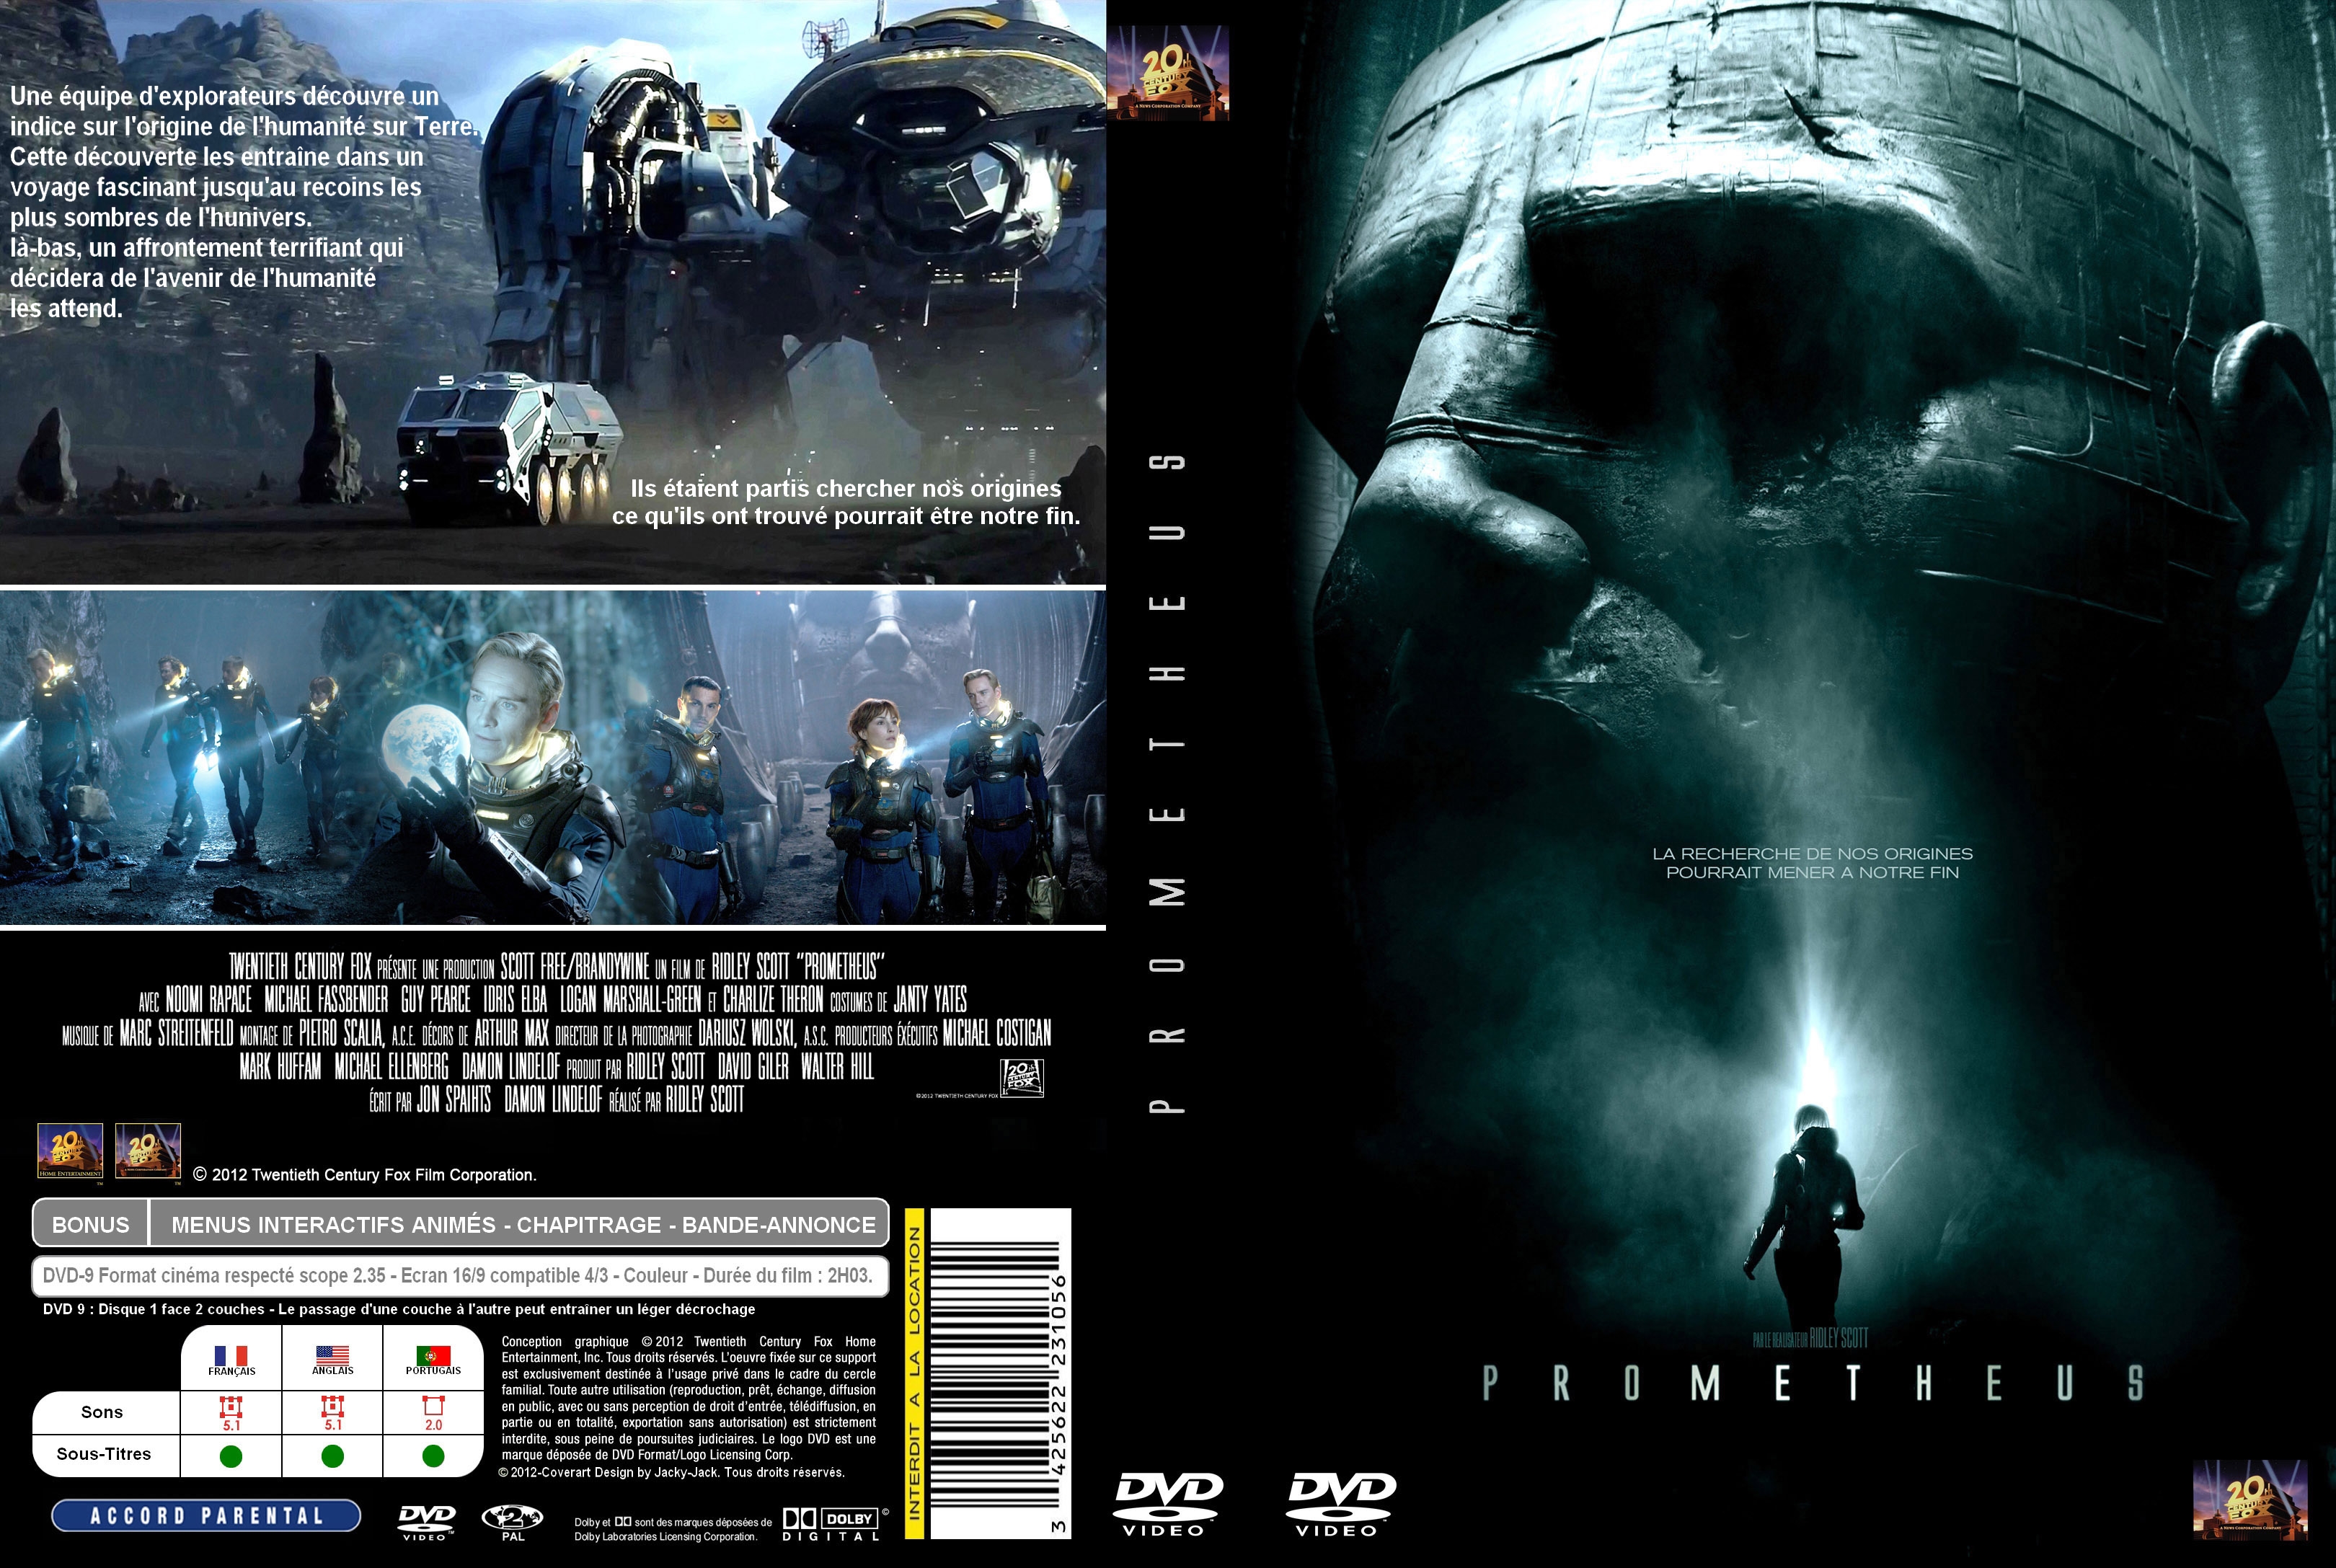 Jaquette DVD Prometheus custom v2